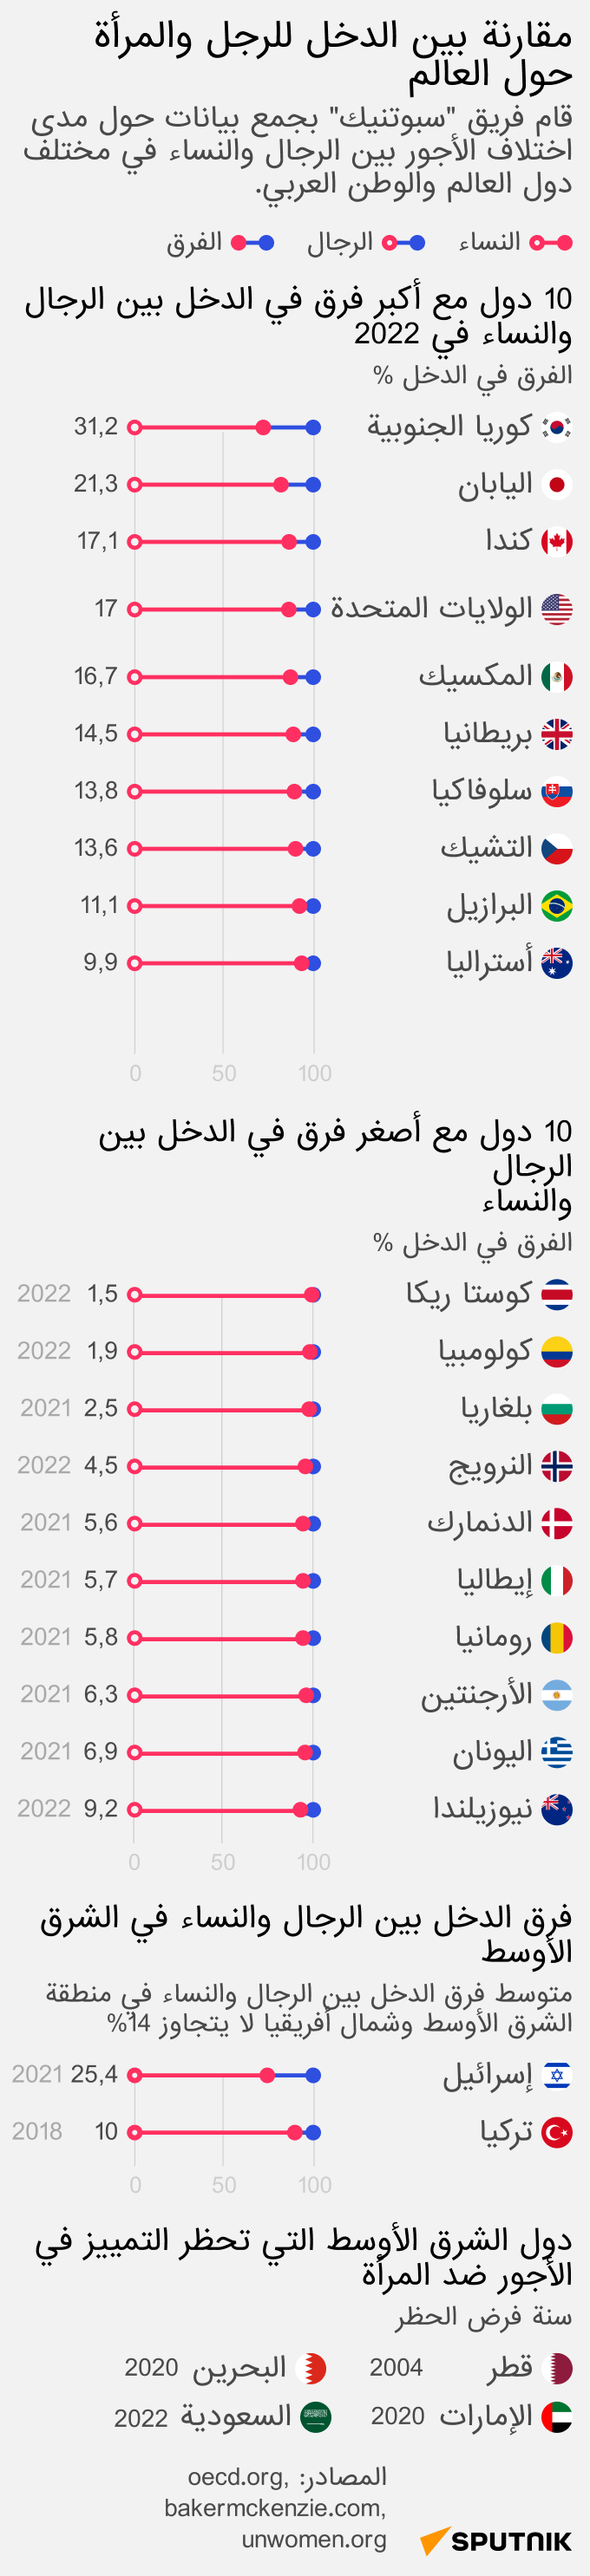 مقارنة دخل الرجال والنساء حول العالم - البلد عربي